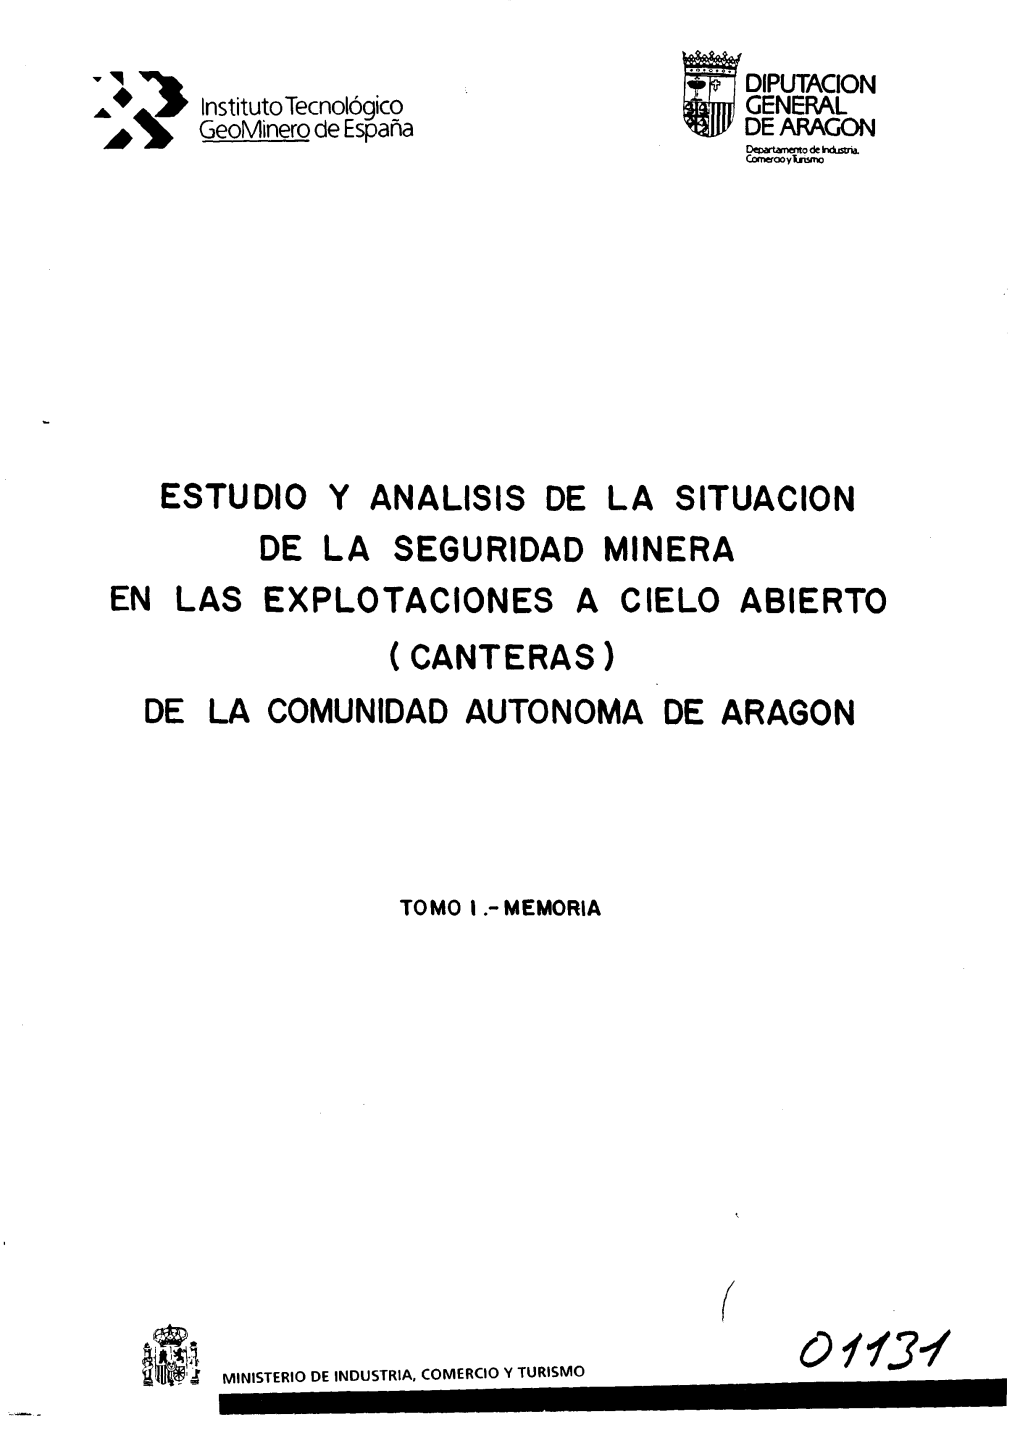 Canteras) De La Comunidad Autonoma De Aragon